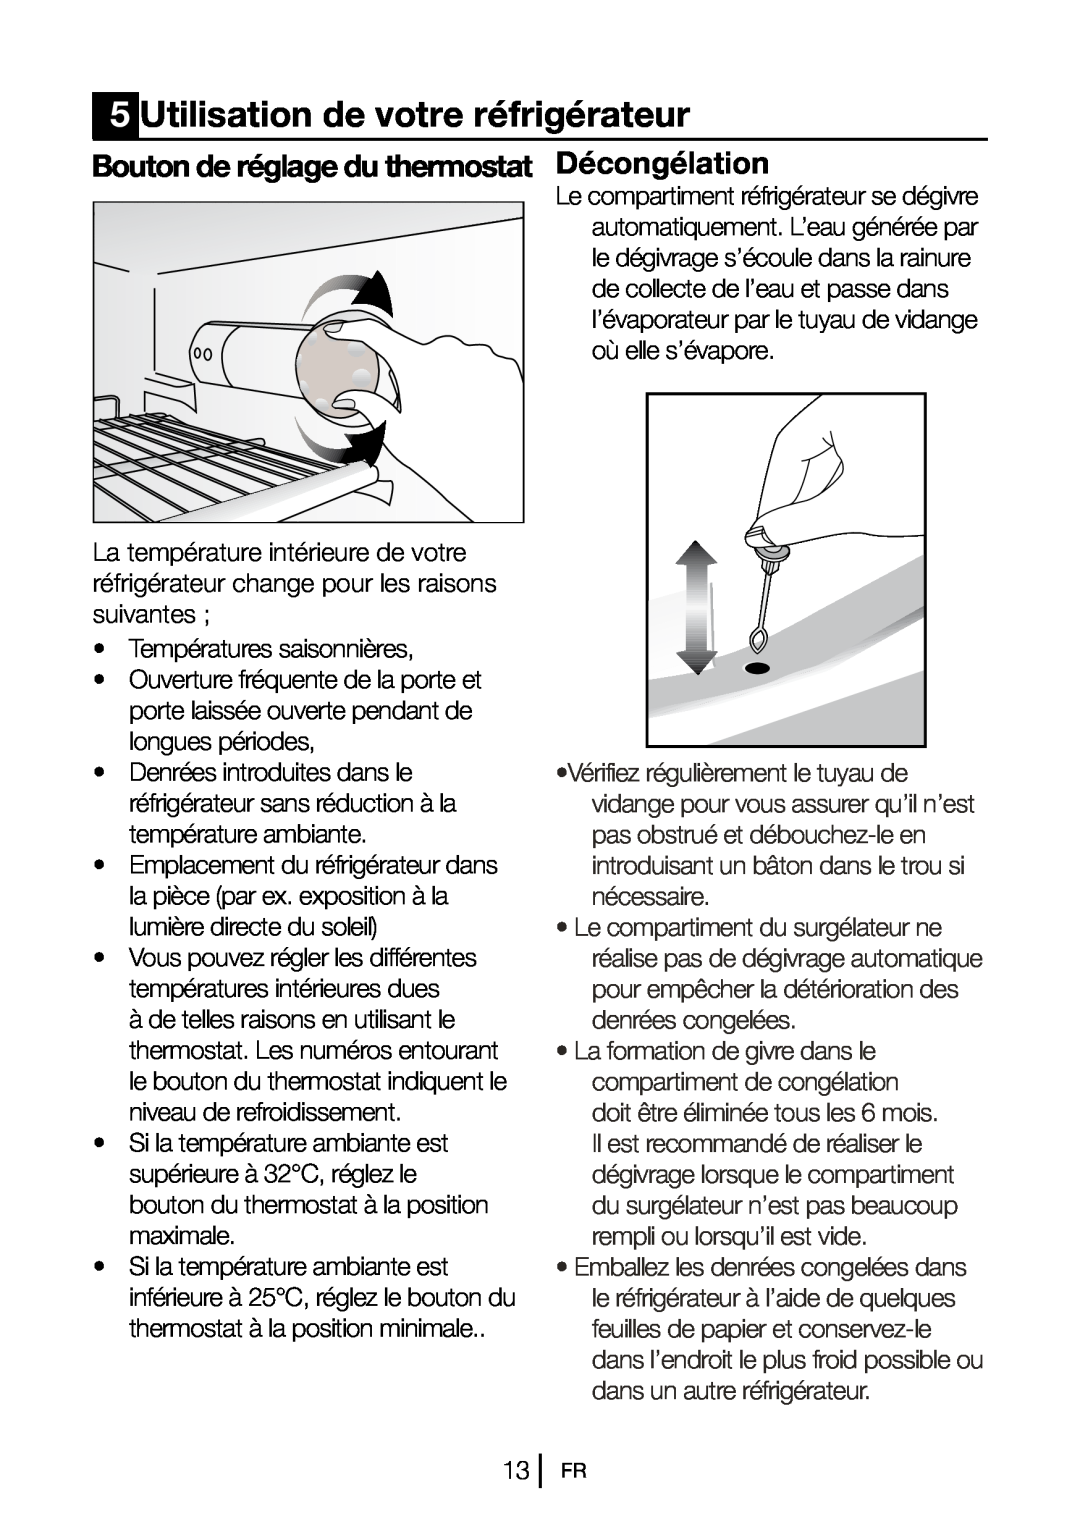 Blomberg DSM 9651 A+ manual Utilisation de votre réfrigérateur, Décongélation, Bouton de réglage du thermostat 